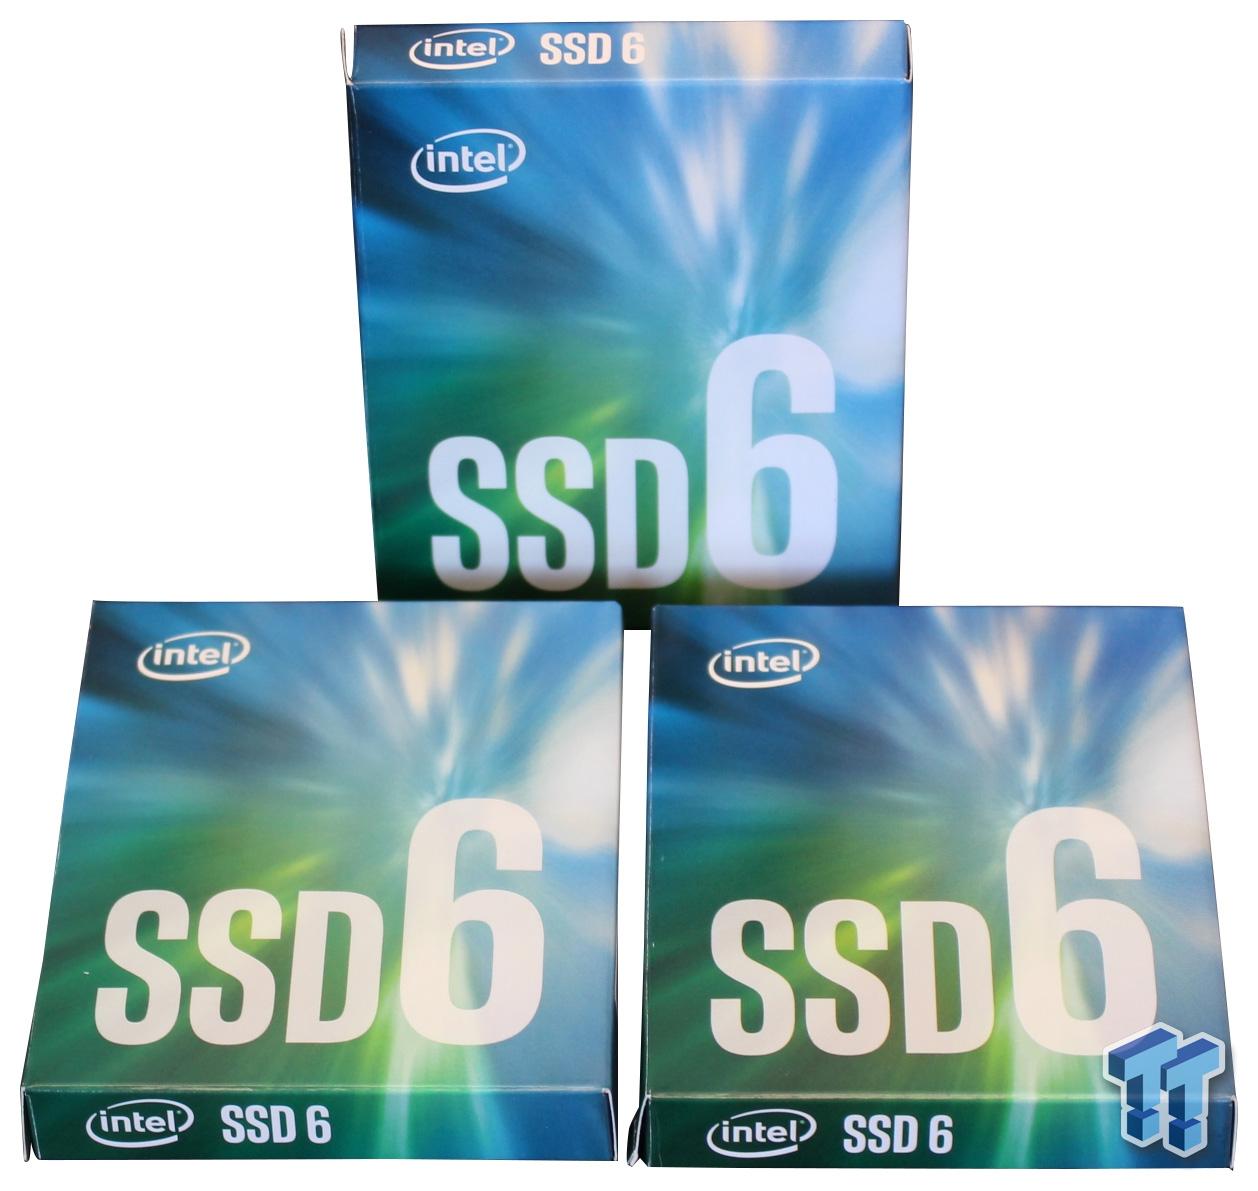 Intel M.2 NVMe PCIe SSD Review